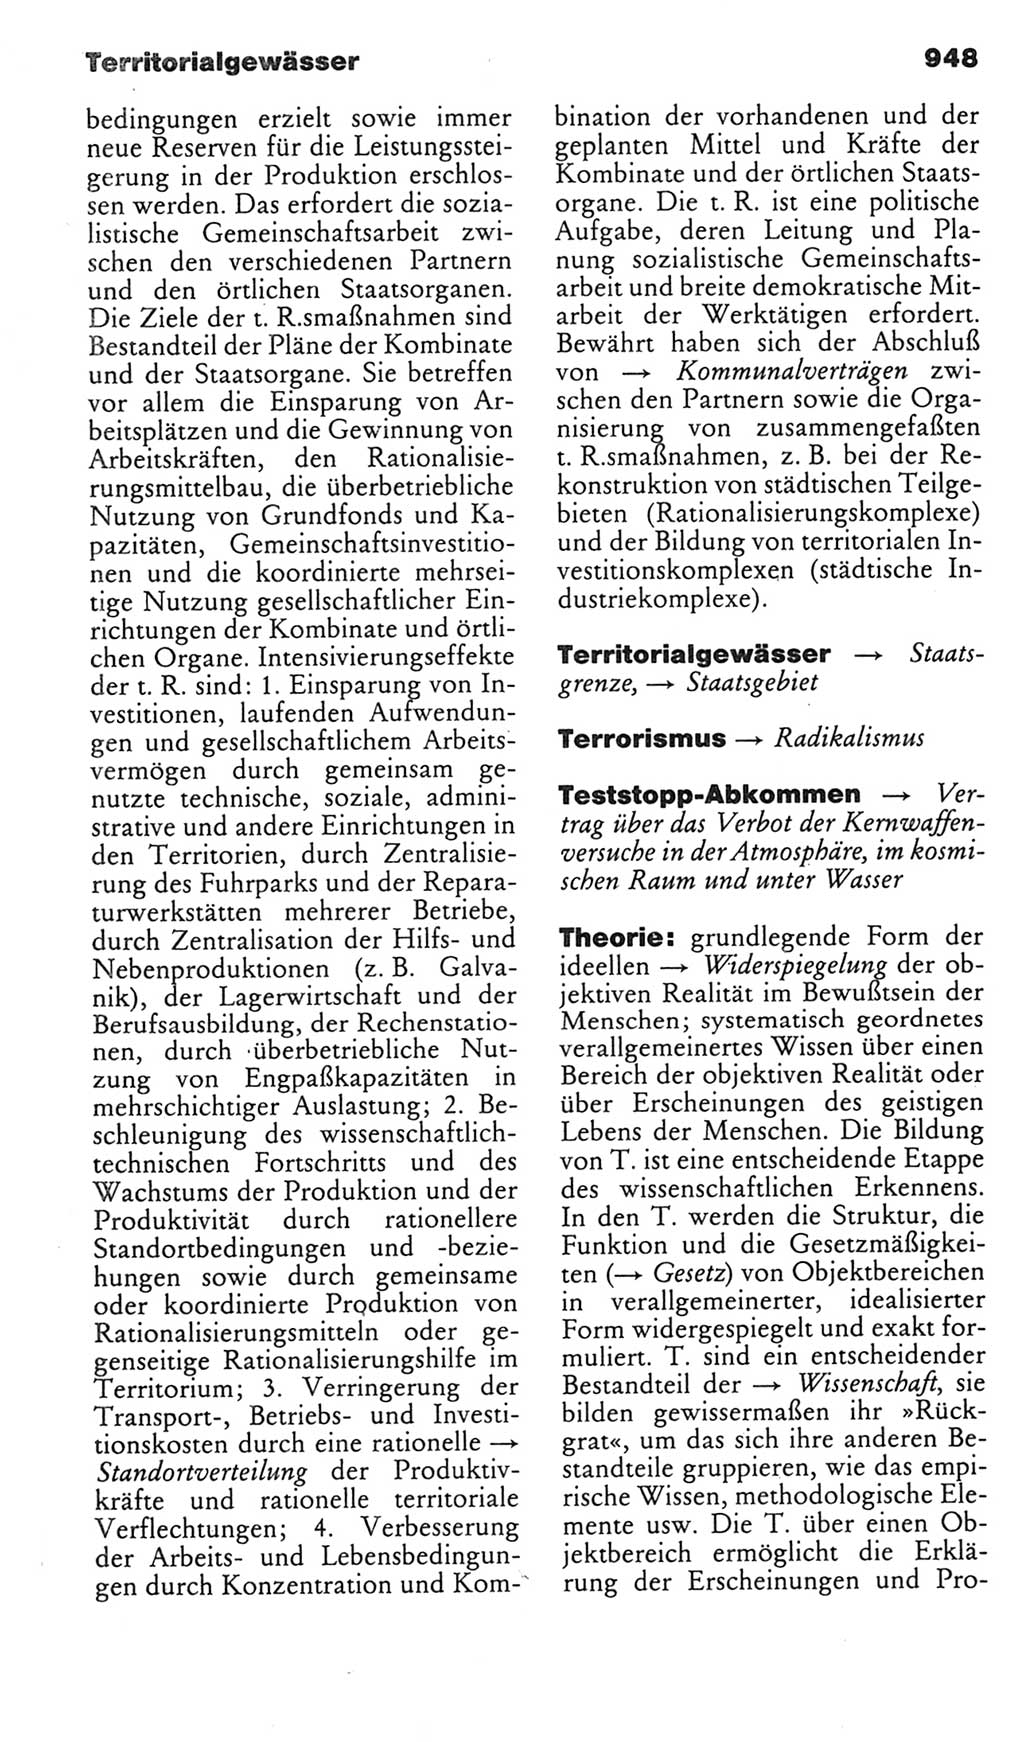 Kleines politisches Wörterbuch [Deutsche Demokratische Republik (DDR)] 1985, Seite 948 (Kl. pol. Wb. DDR 1985, S. 948)